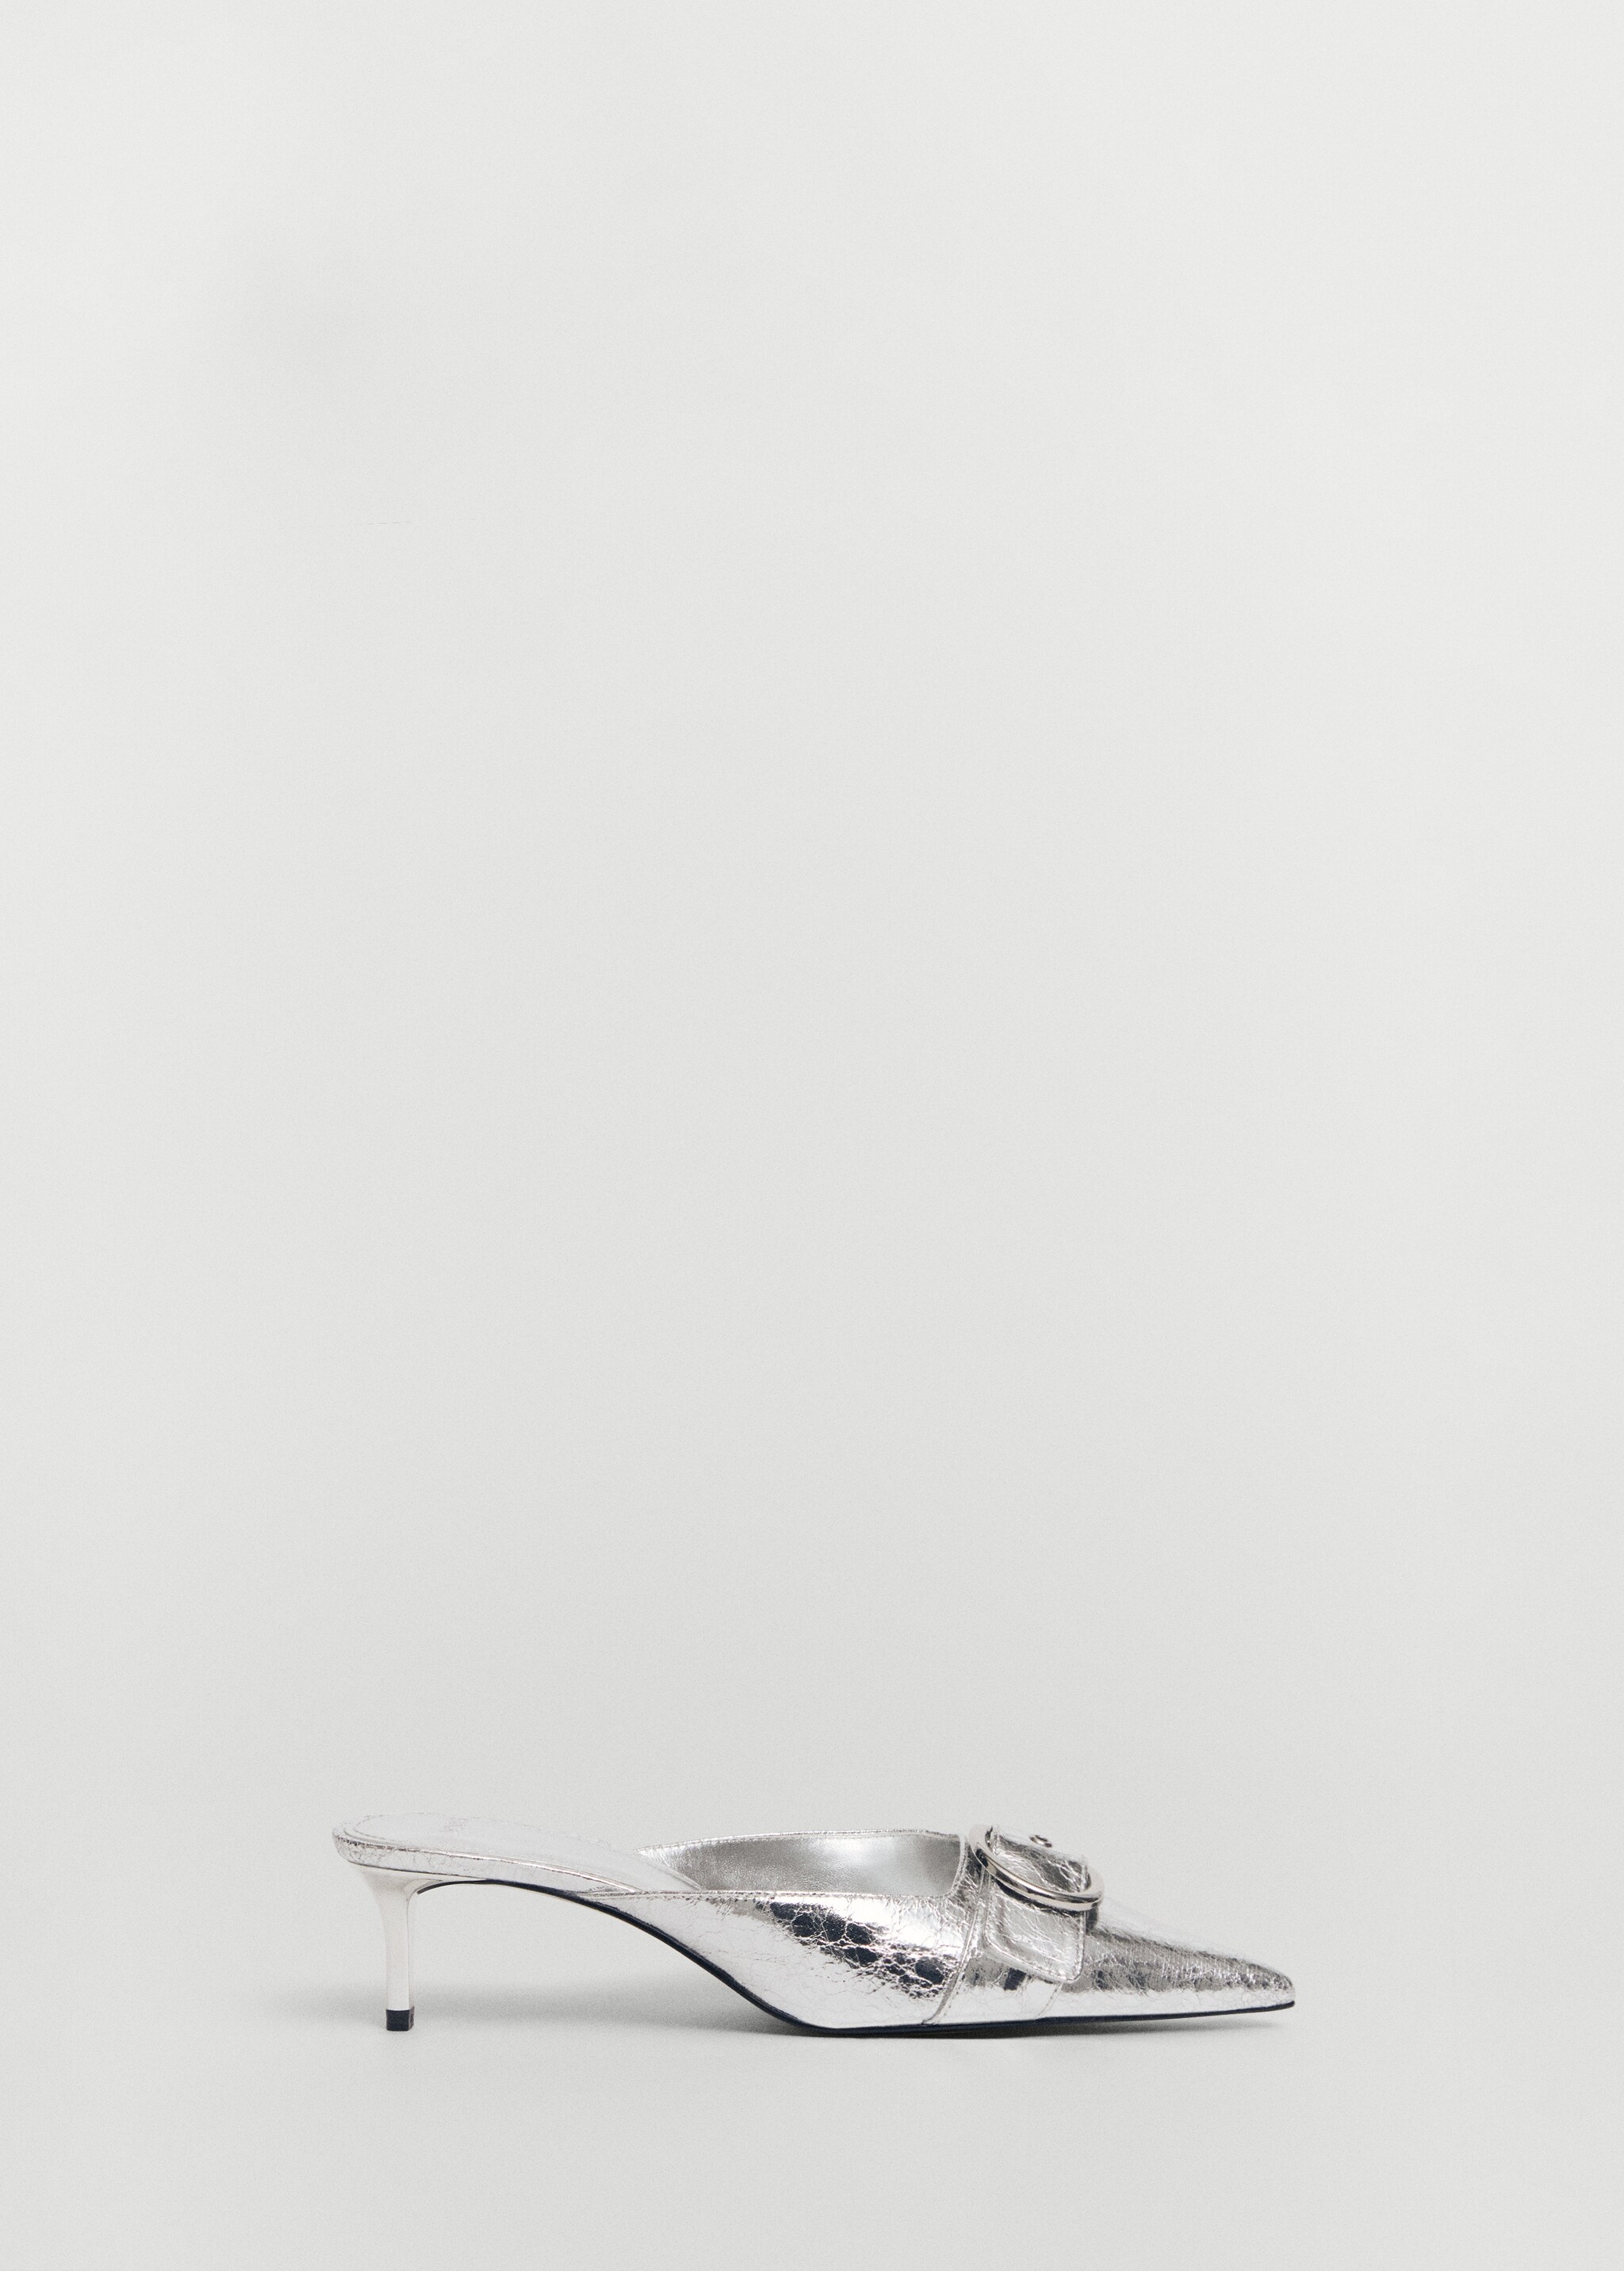 Zapato metalizado tacón hebilla - Artículo sin modelo